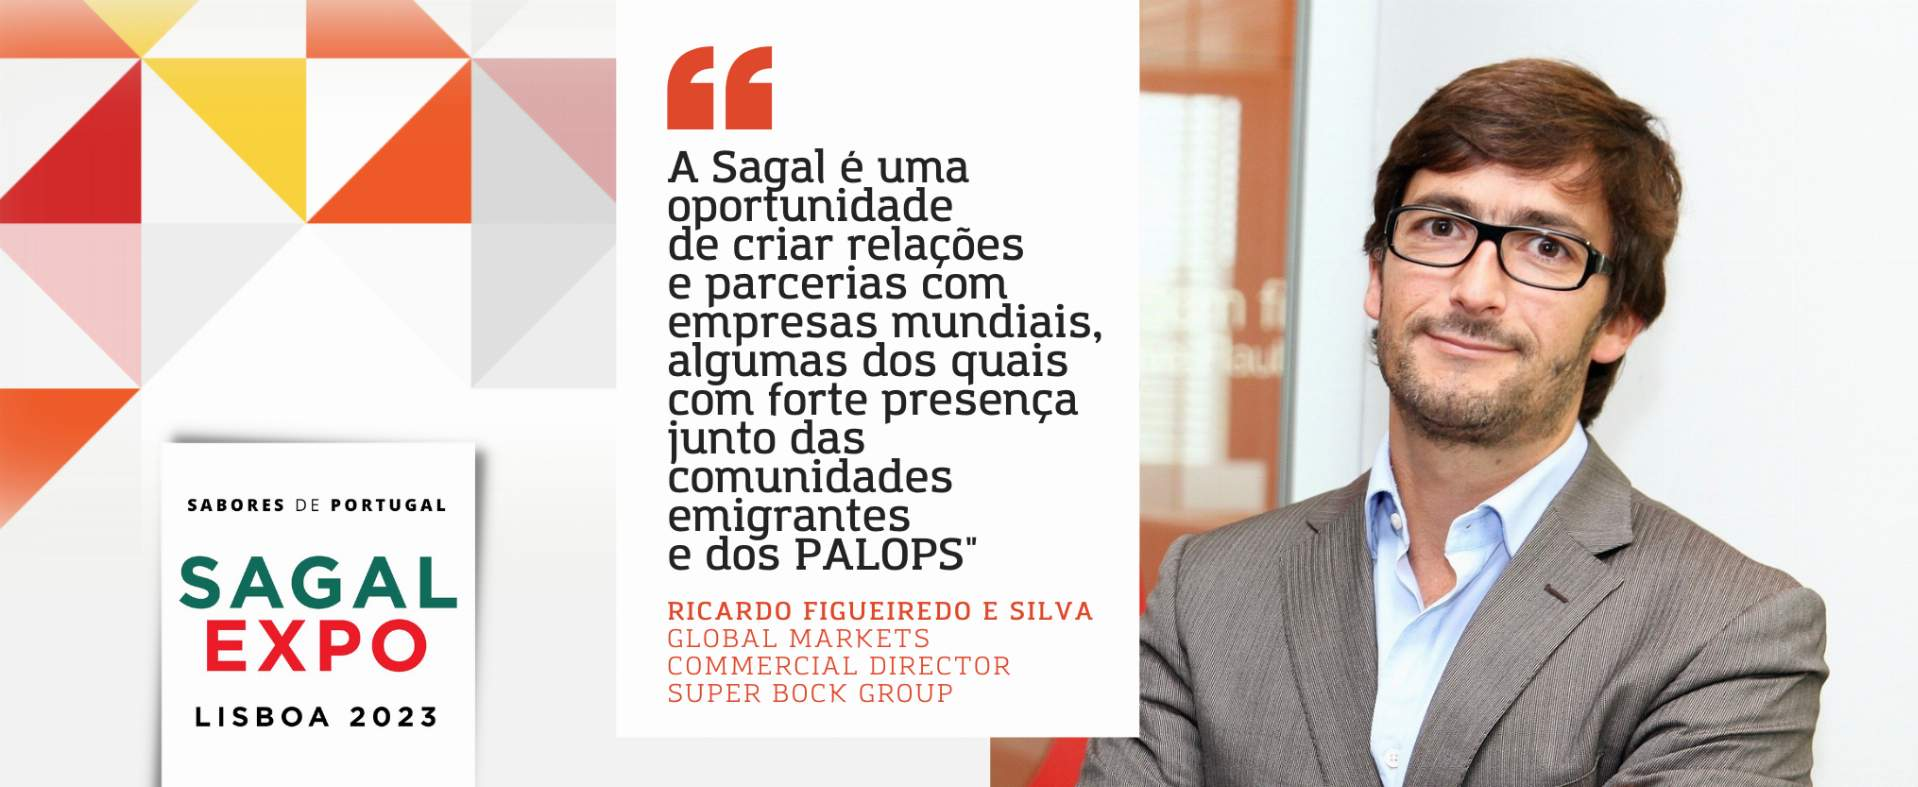 Super Bock: “A Sagal é uma oportunidade de criar relações e parcerias com empresas mundiais, algumas dos quais com forte presença junto das comunidades emigrantes e dos PALOPS”